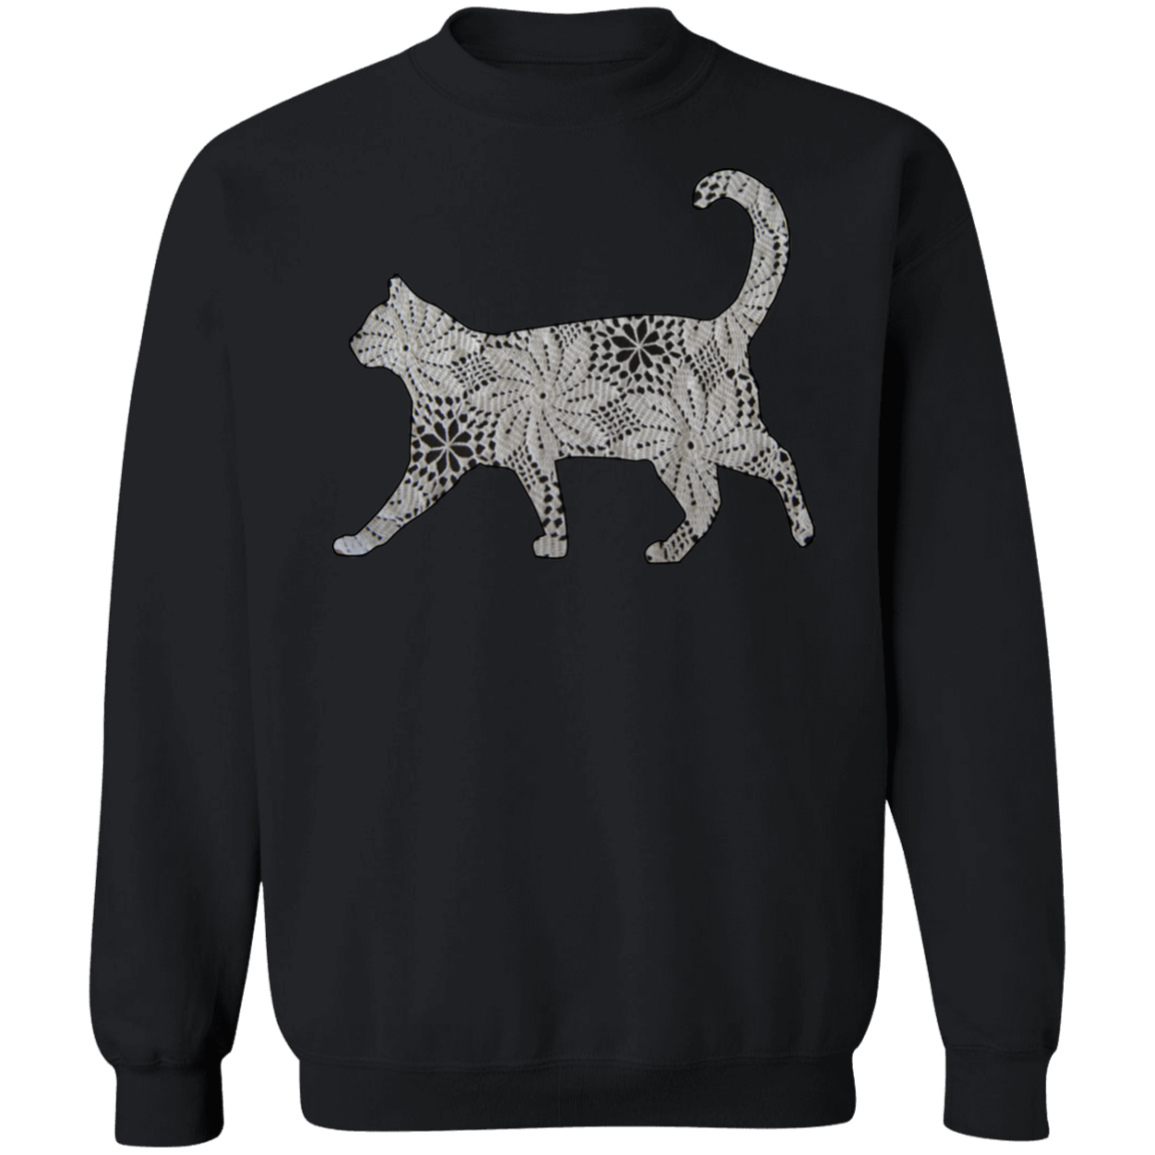 Crochet Cat Crewneck Pullover Sweatshirt